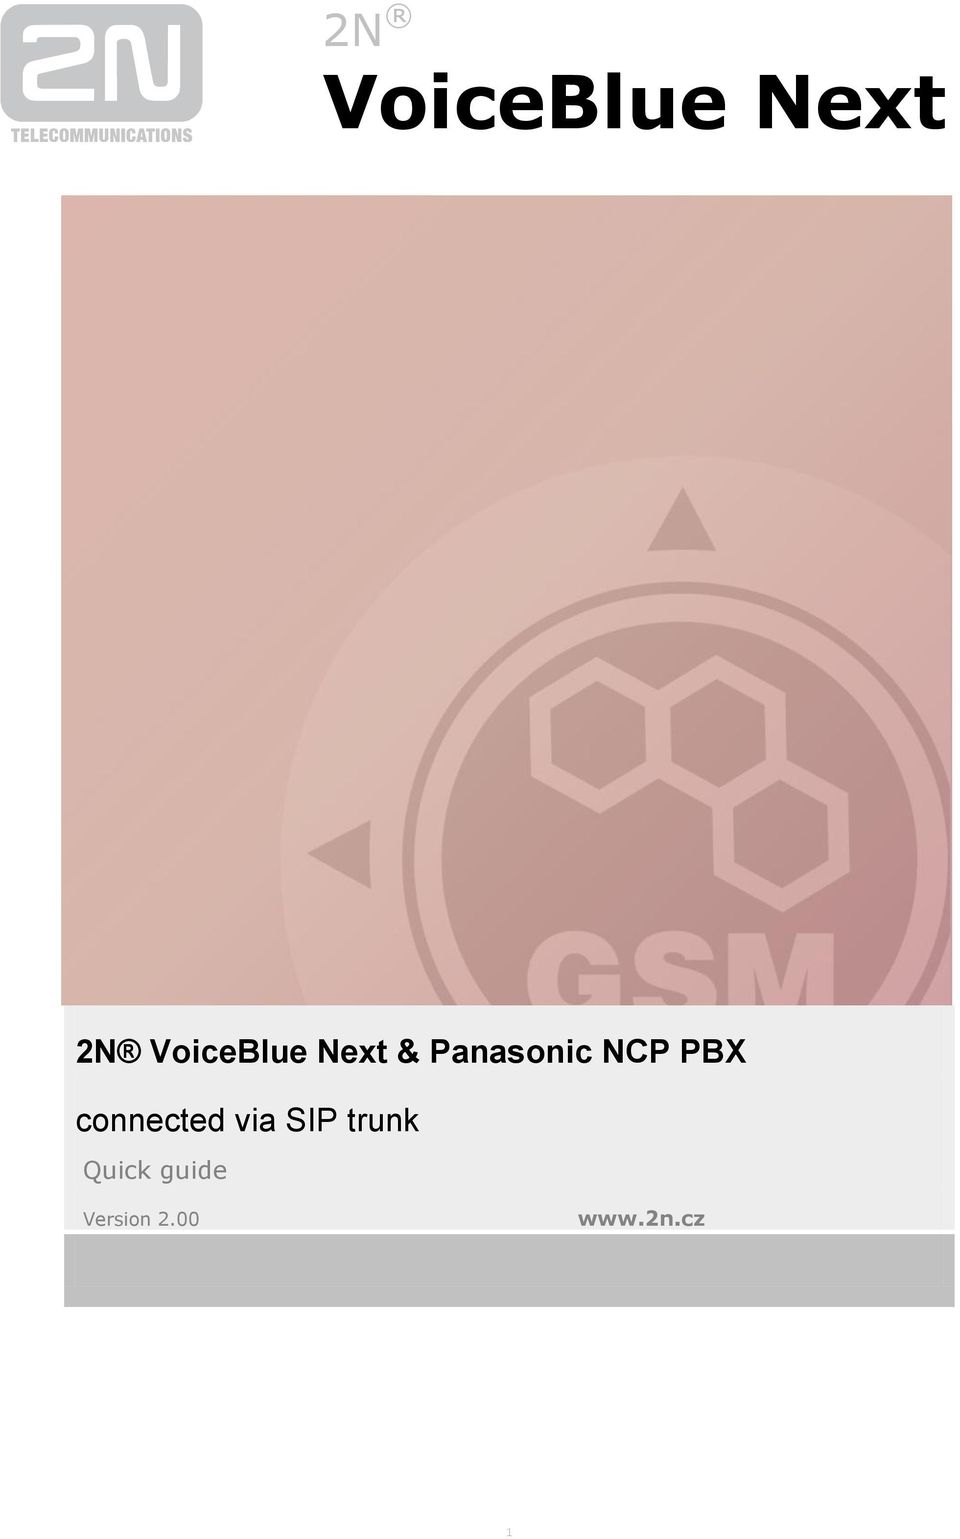 NCP PBX connected via SIP